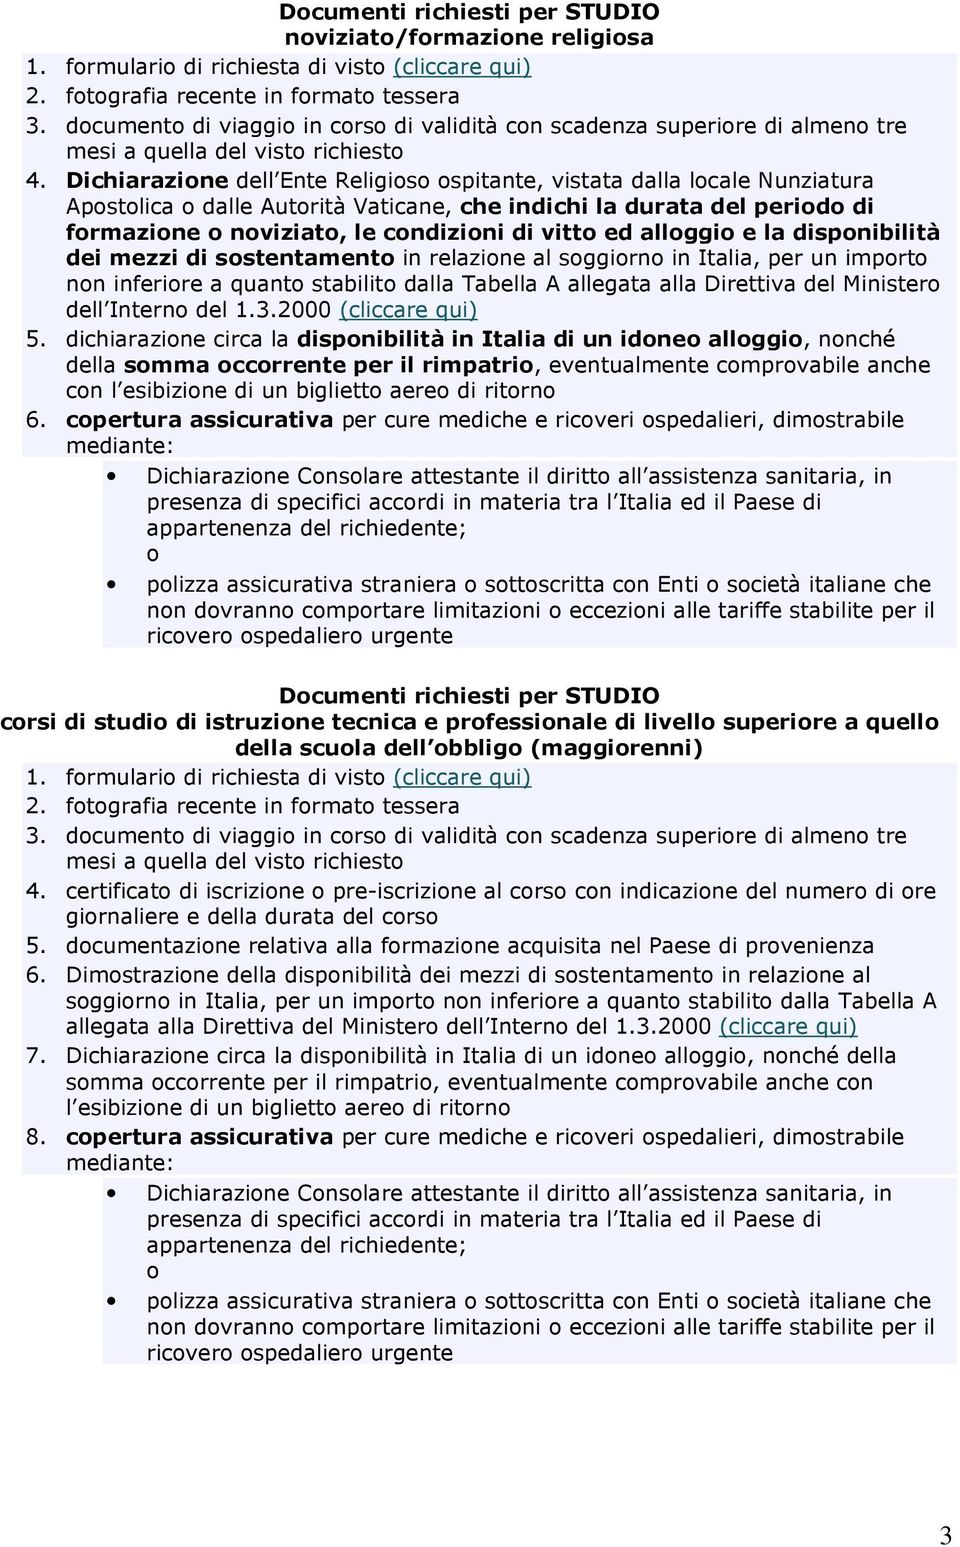 dispnibilità dei mezzi di sstentament in relazine al sggirn in Italia, per un imprt nn inferire a quant stabilit dalla Tabella A allegata alla Direttiva del Minister dell Intern del 1.3.